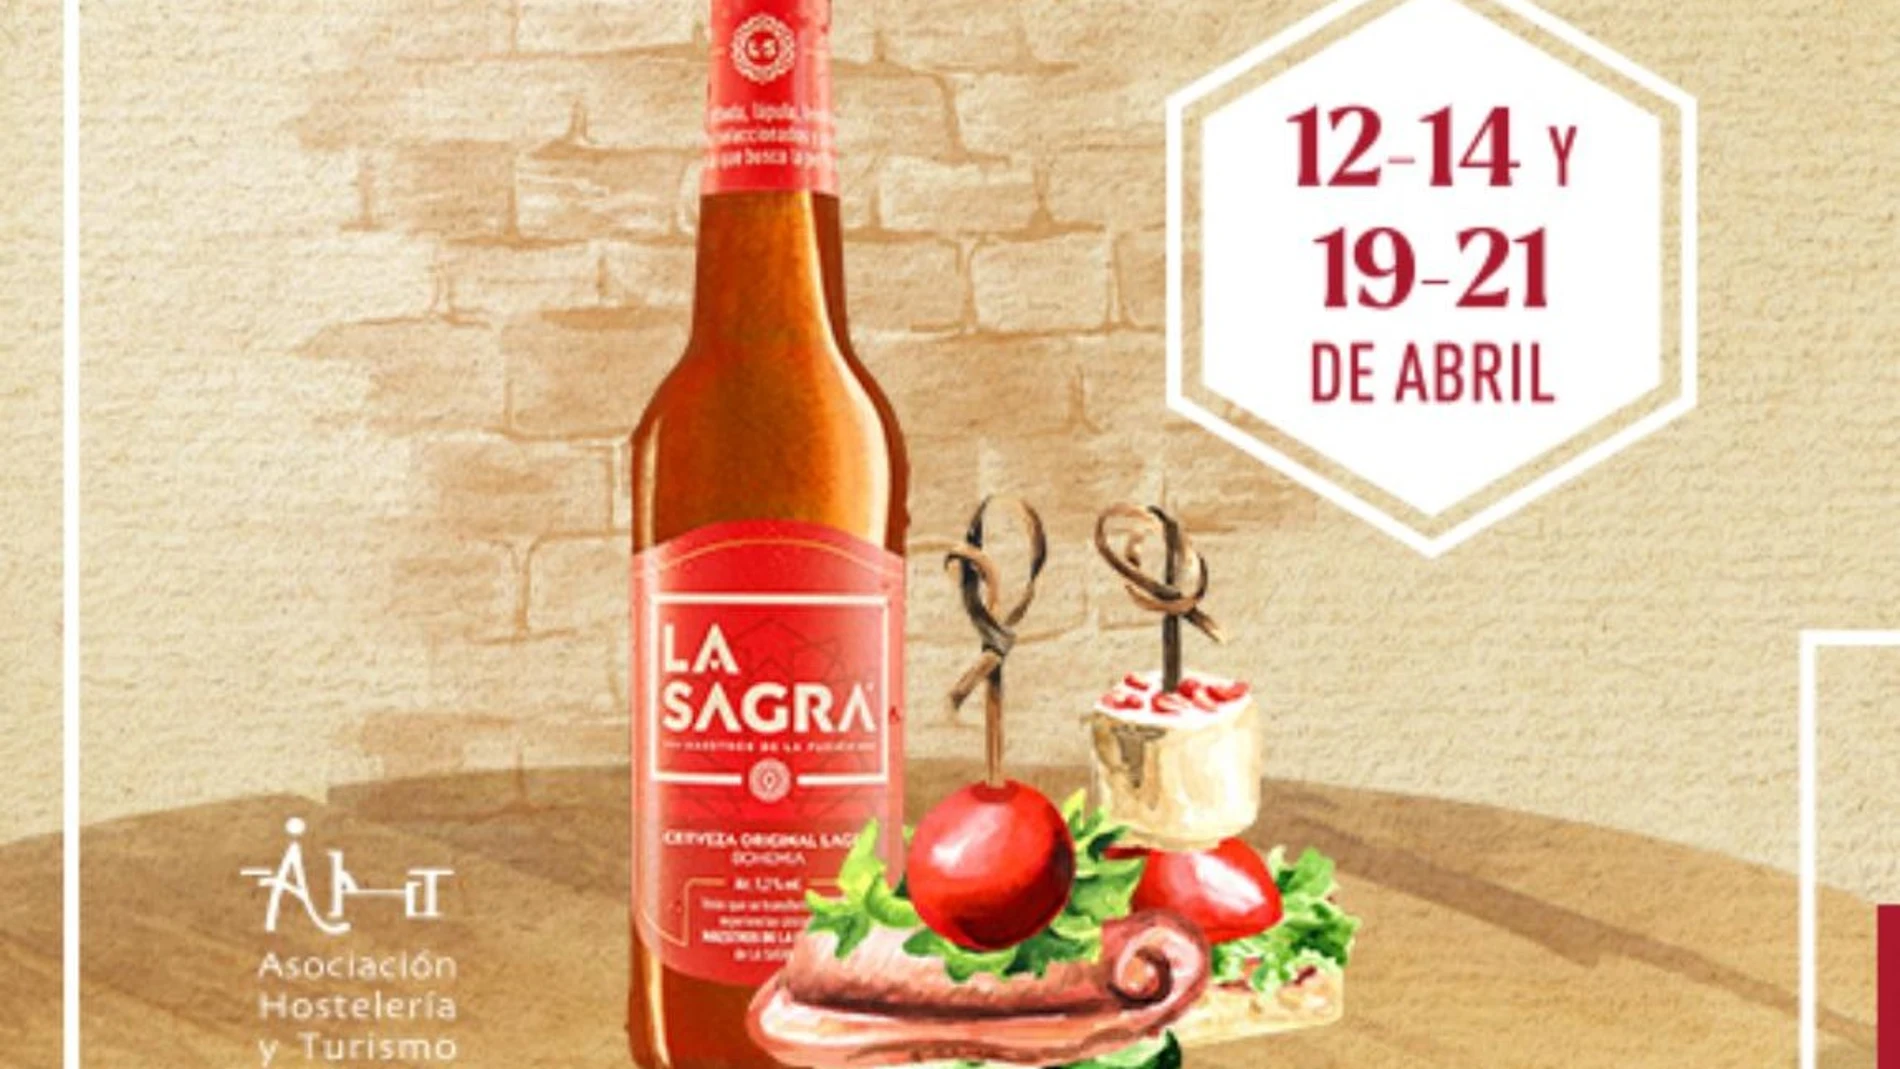 Décima edición de las Jornadas Gastronómicas de Cerveza La Sagra